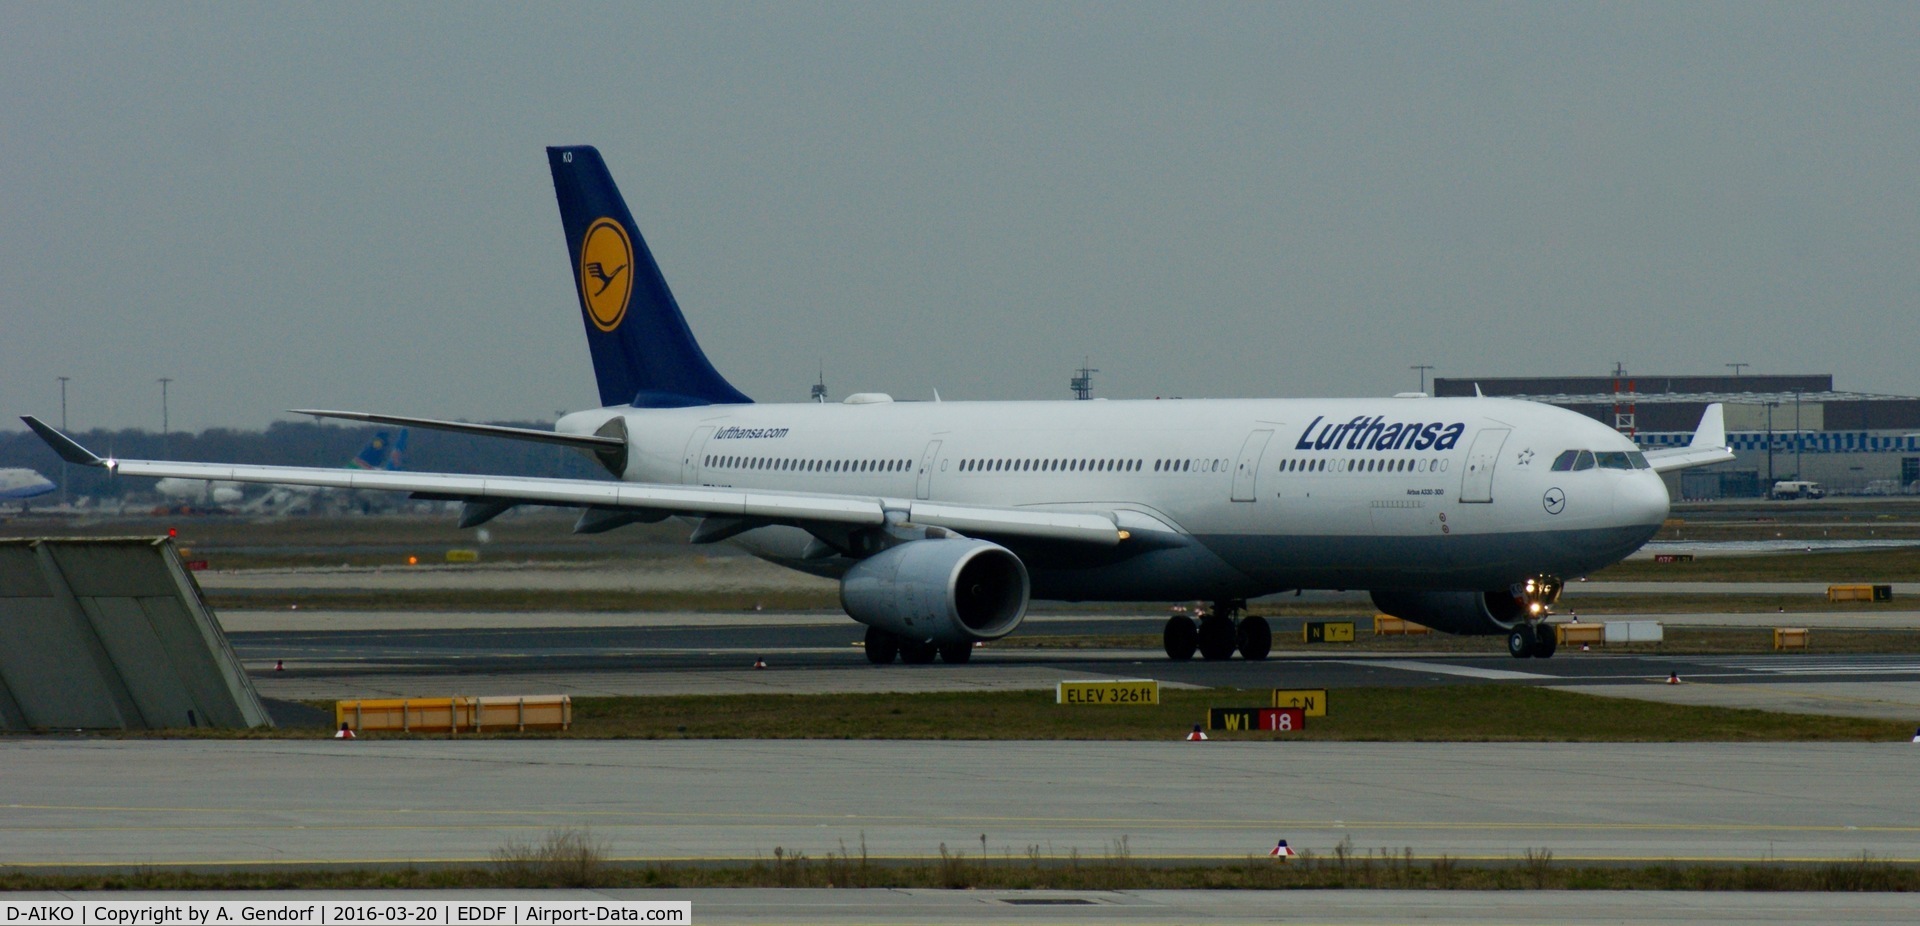 D-AIKO, 2009 Airbus A330-343X C/N 989, Lufthansa, seen here 